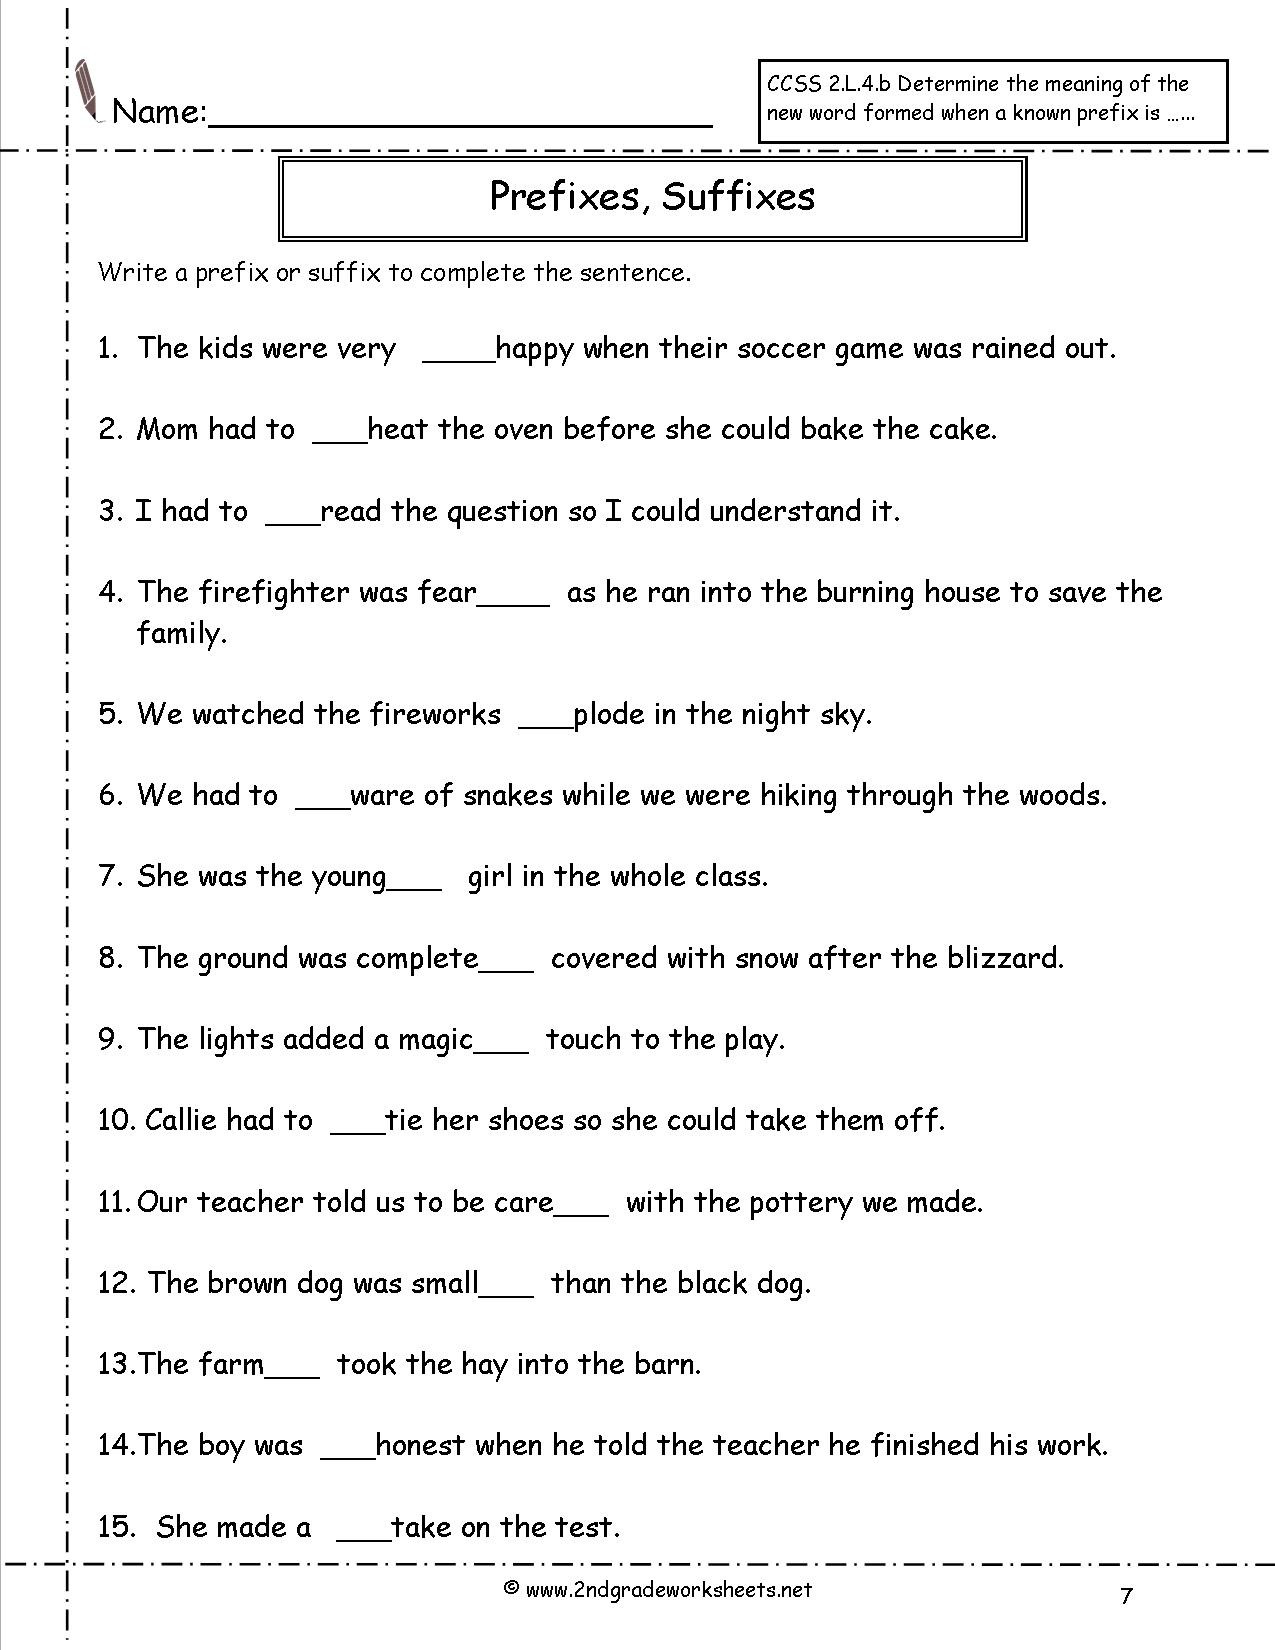 Prefixes Worksheet 3rd Grade Second Grade Prefixes Worksheets